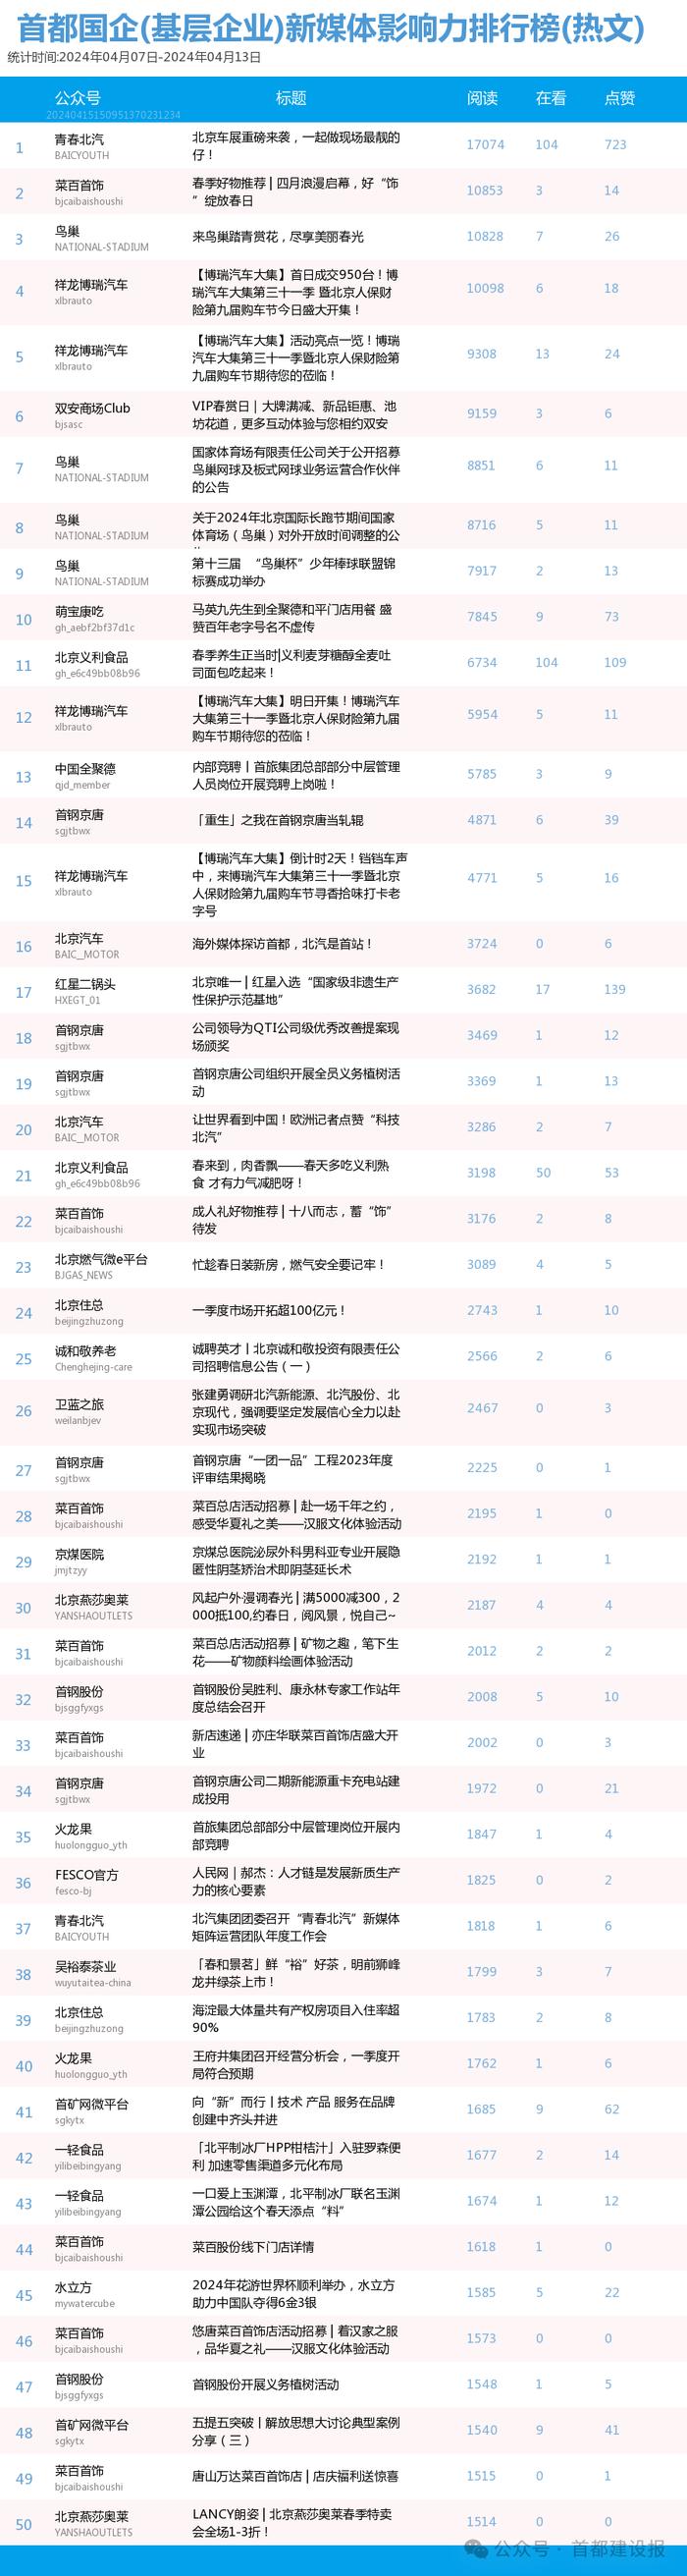 【北京国企新媒体影响力排行榜】4月周榜(4.7-4.13)第403期